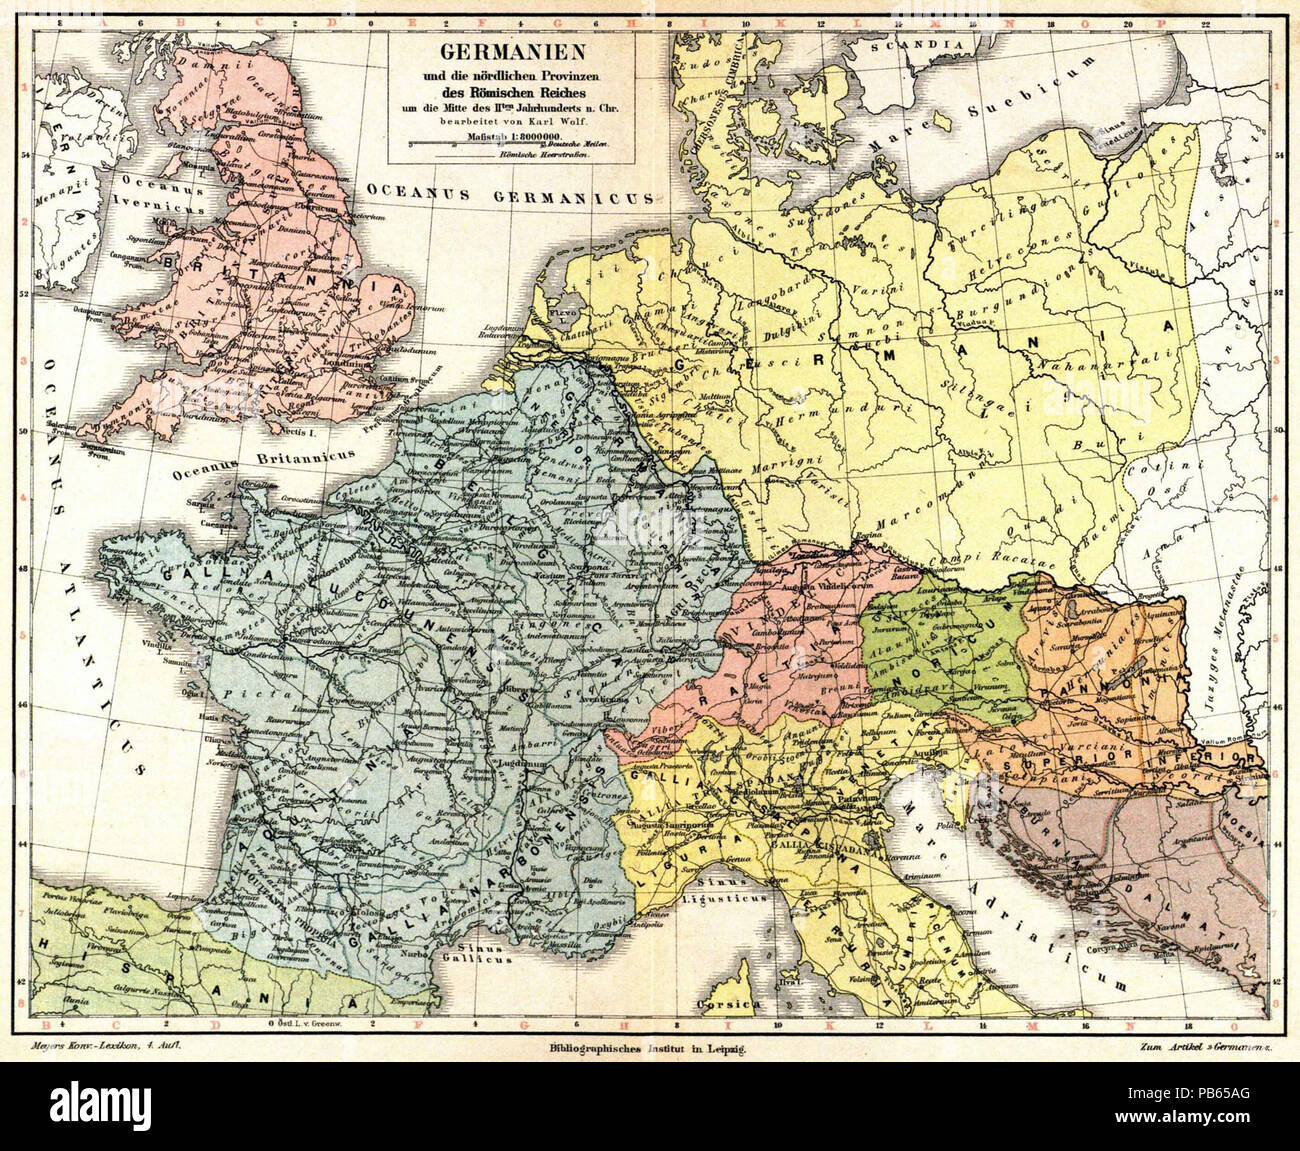 M4 Provinzen Römisches Reich Alte historische Landkarte 1889 Germanien nördl 